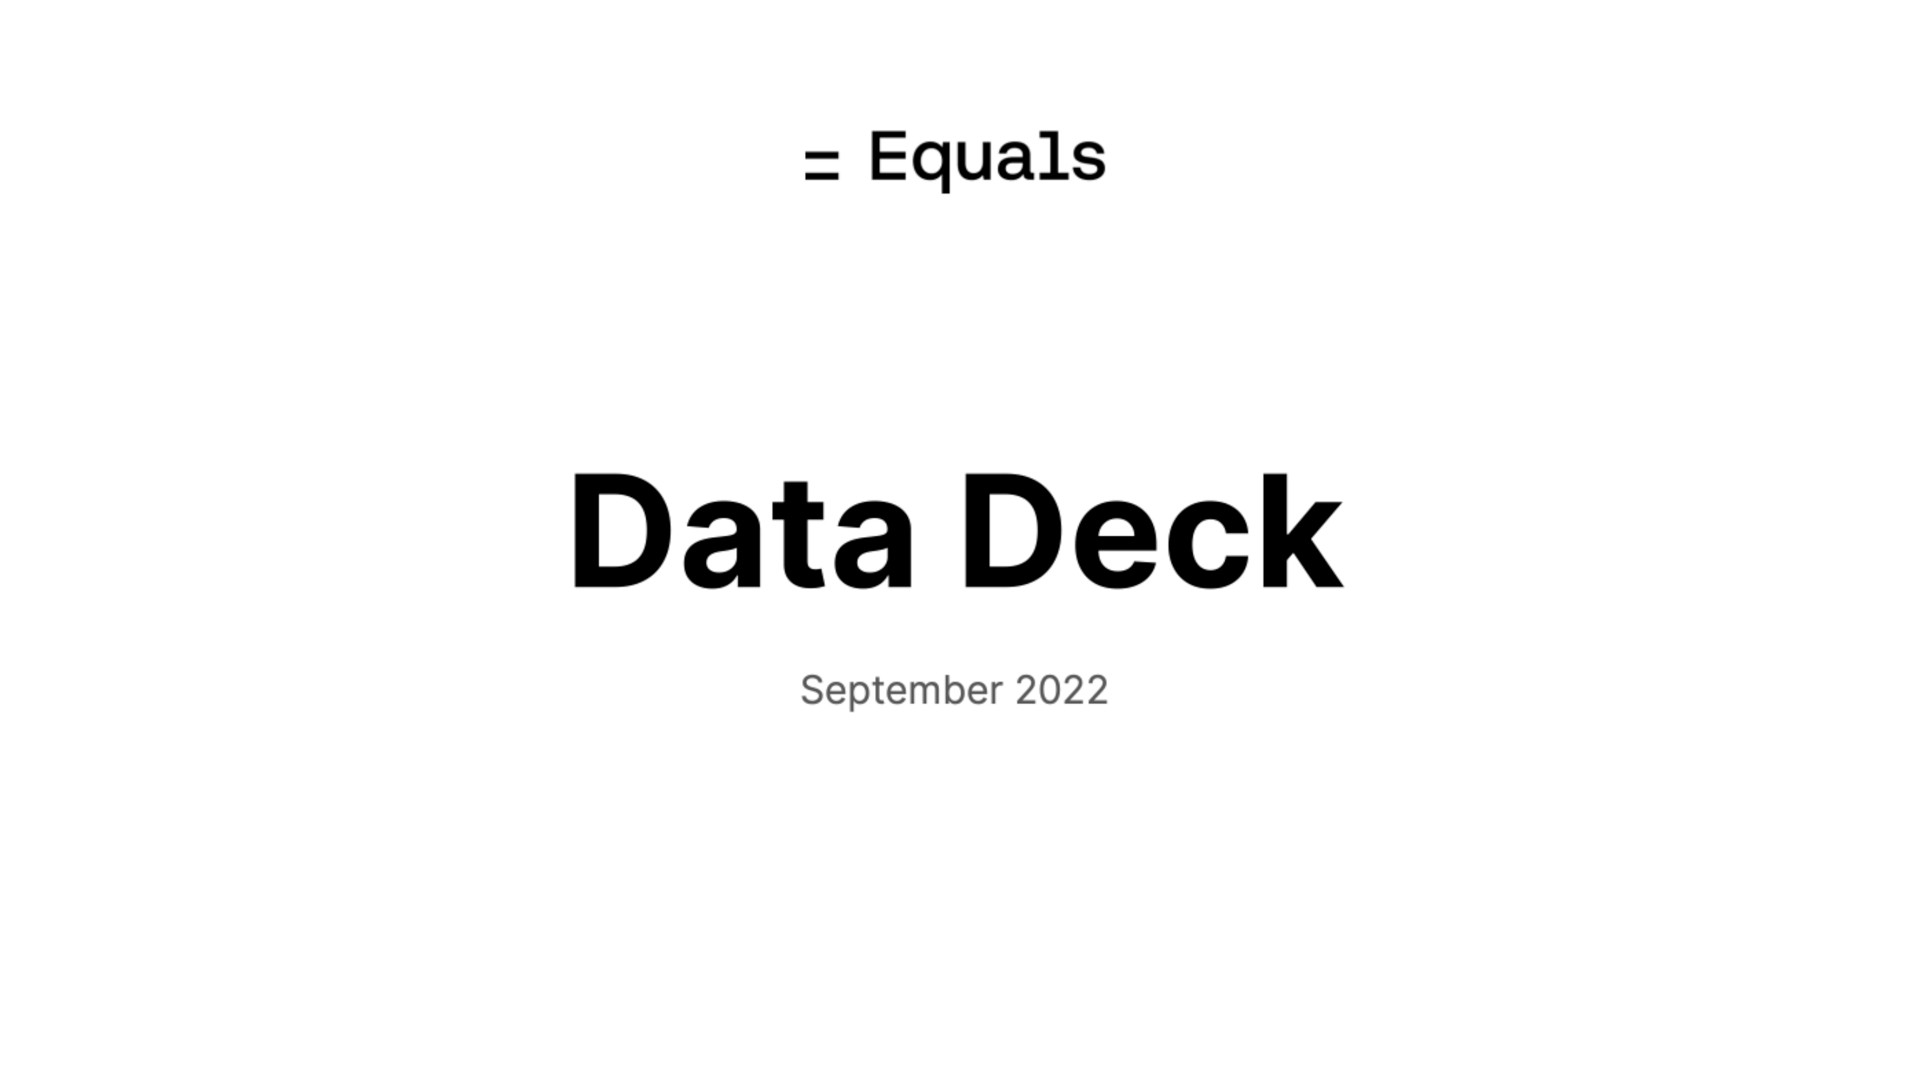 equals data deck | Equals